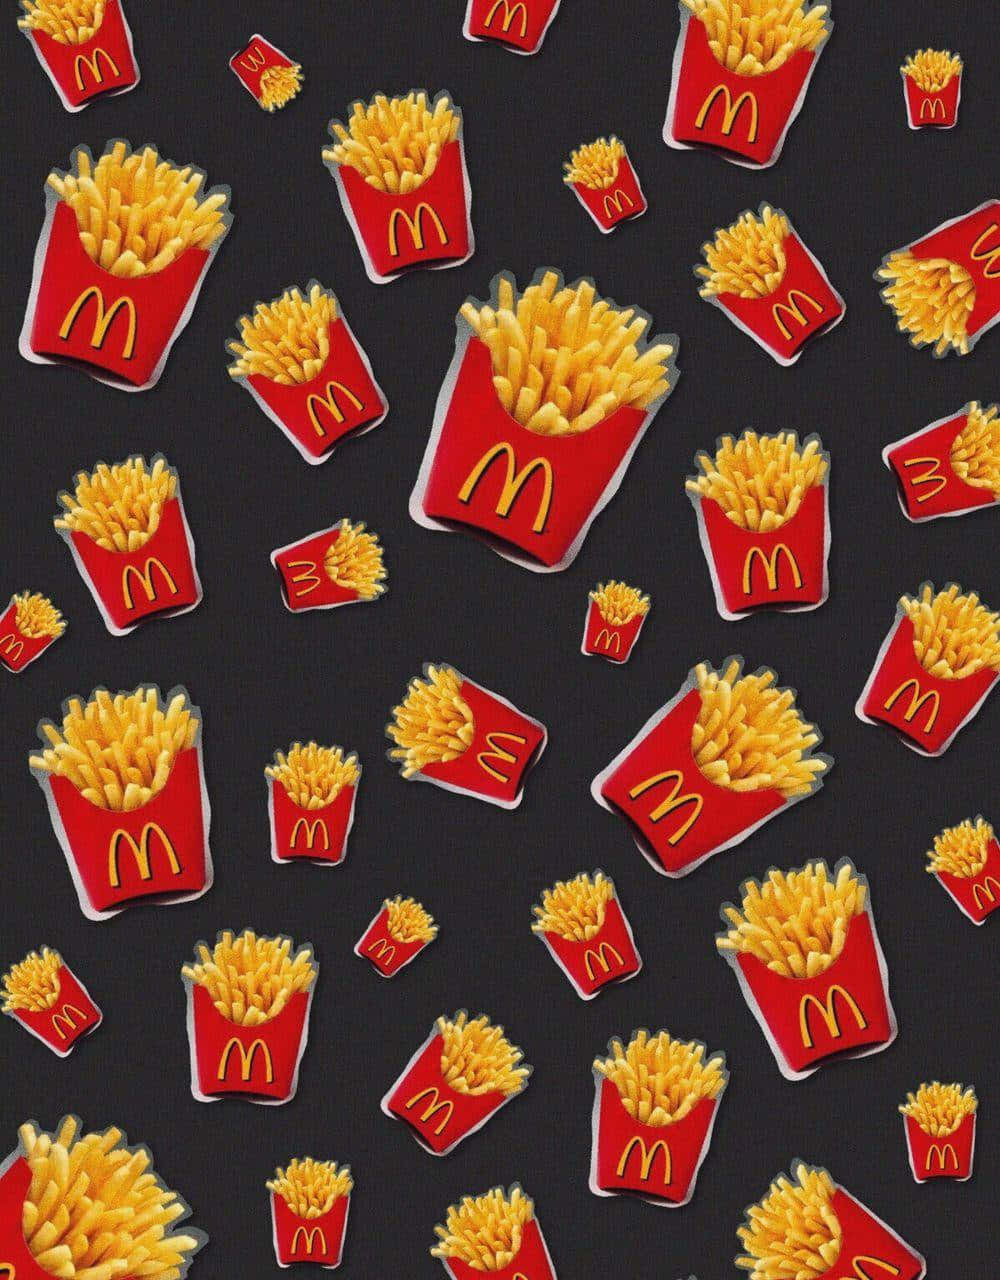 Nyd de lækre retter med et moderne twist på Aesthetic McDonalds. Wallpaper